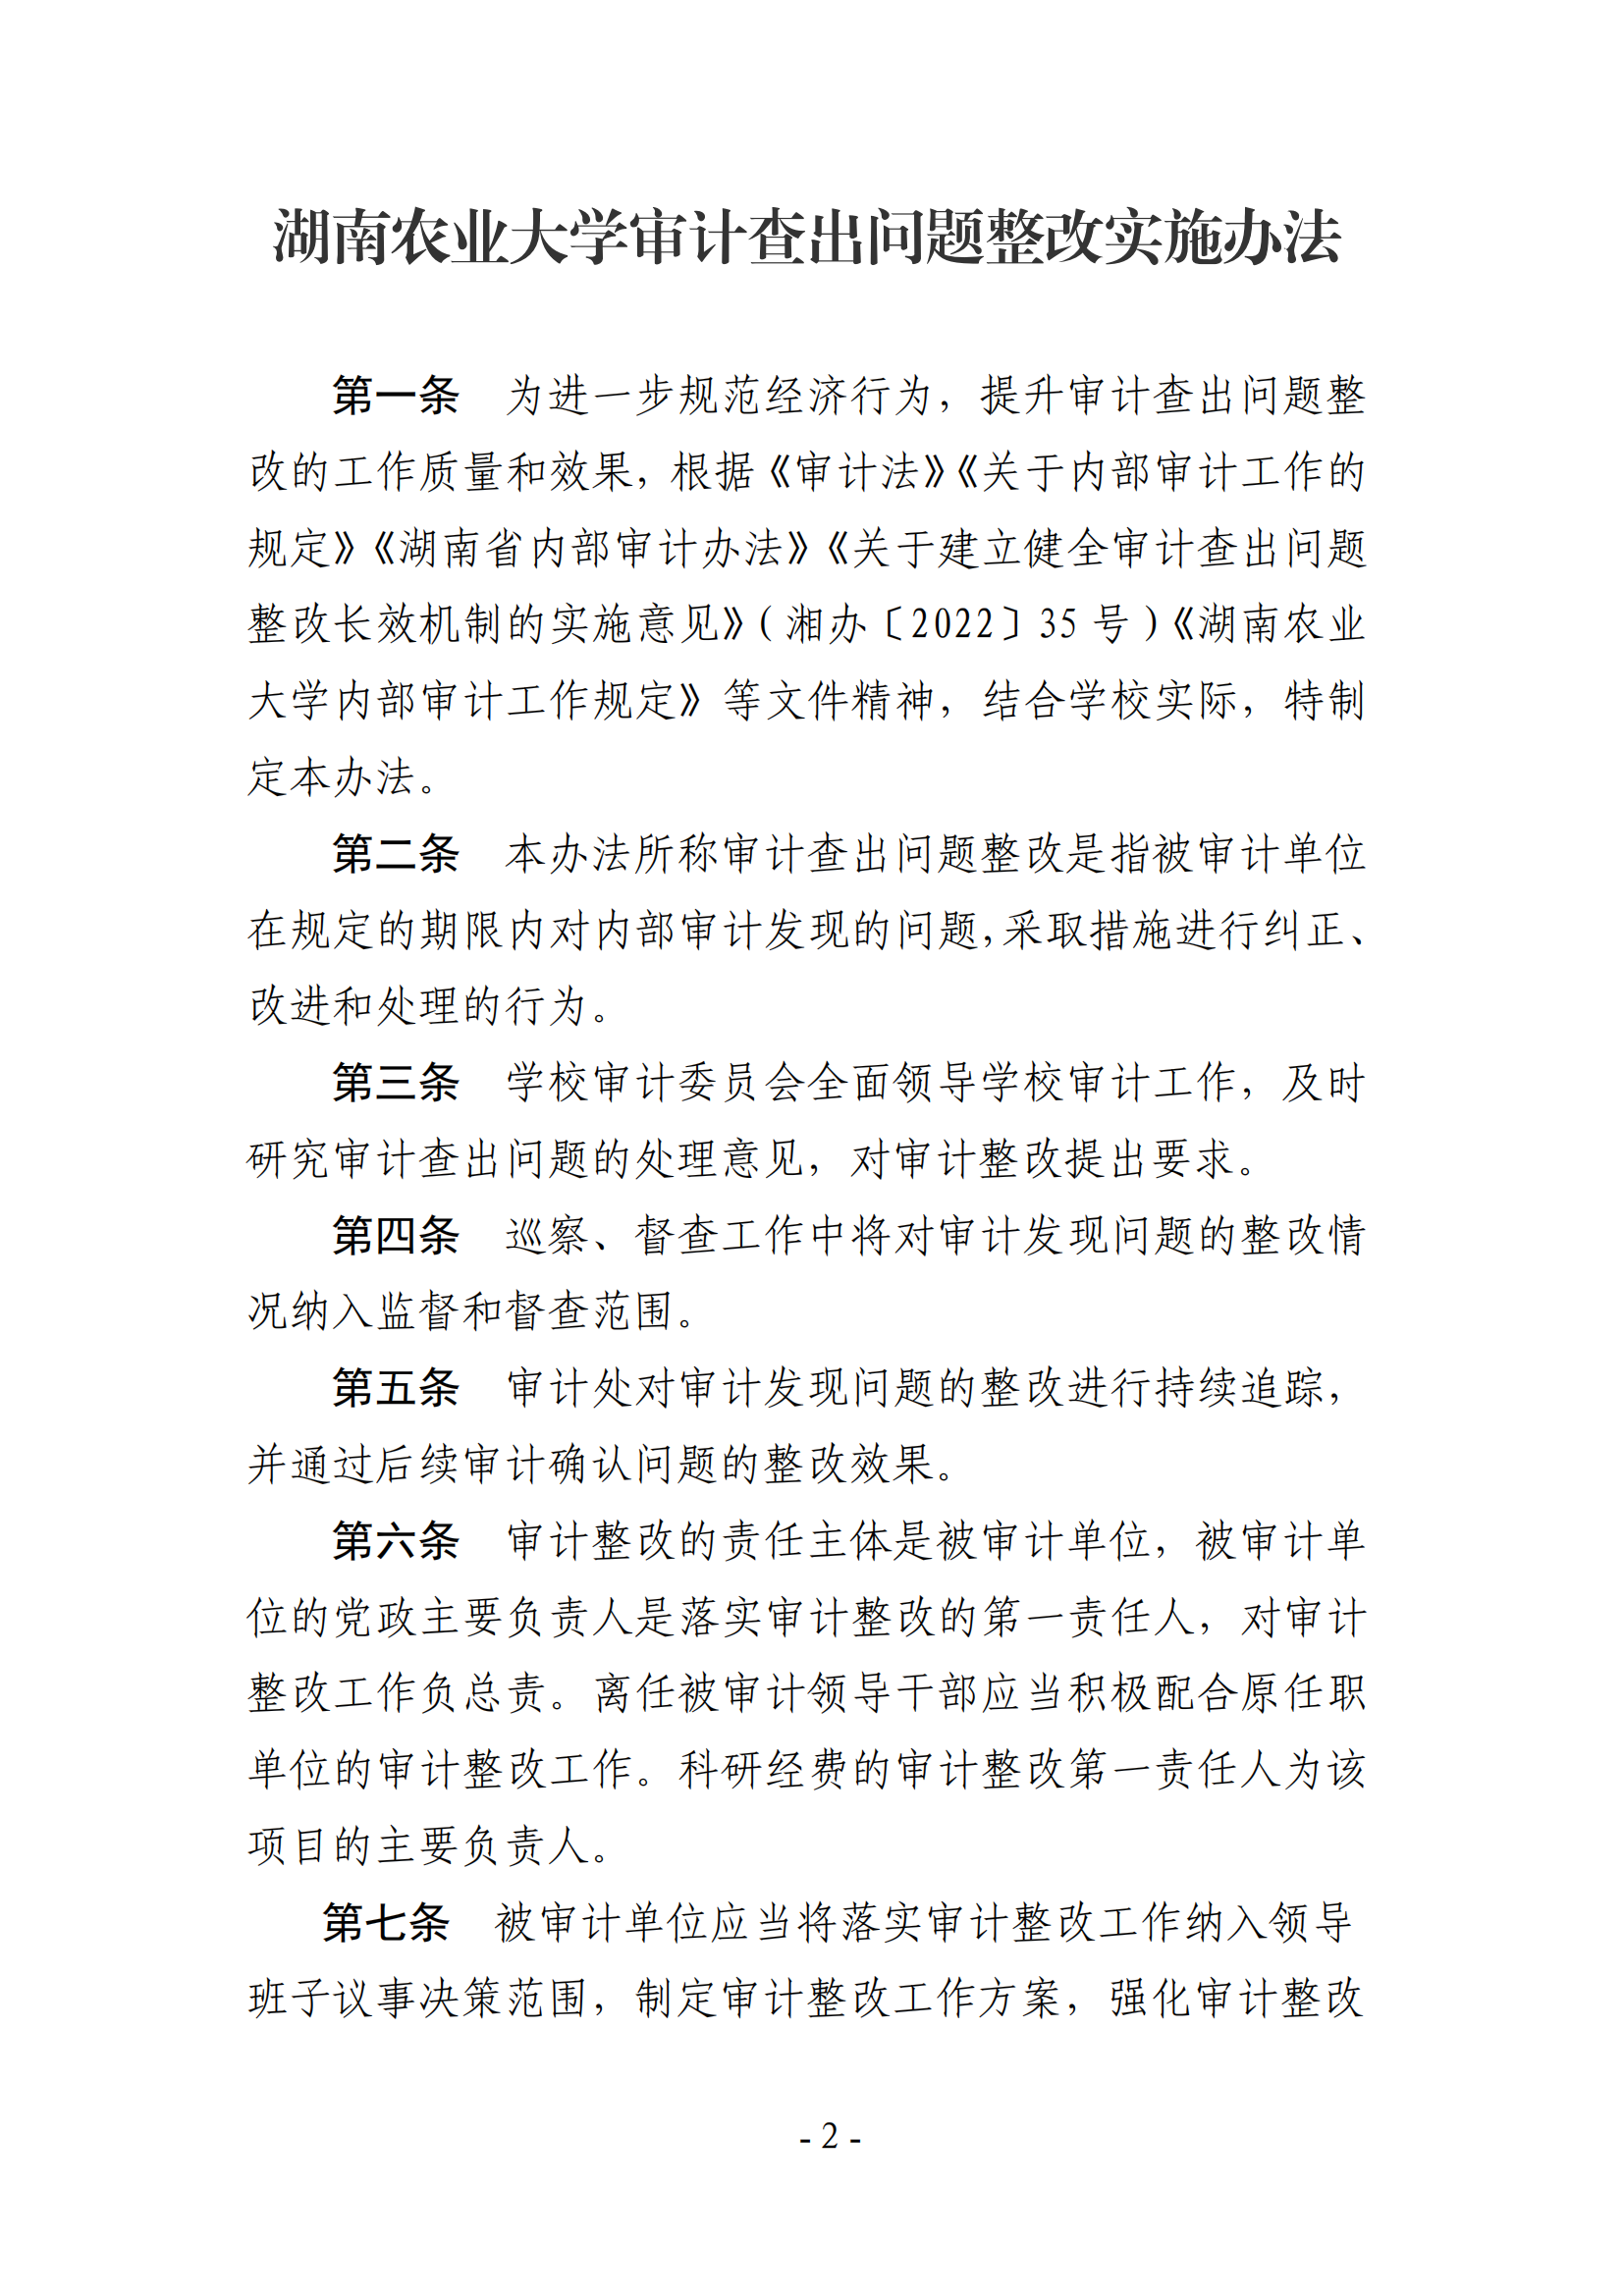 关于印发《湖南农业大学审计查出问题整改实施办法》的通知-正文_01.png